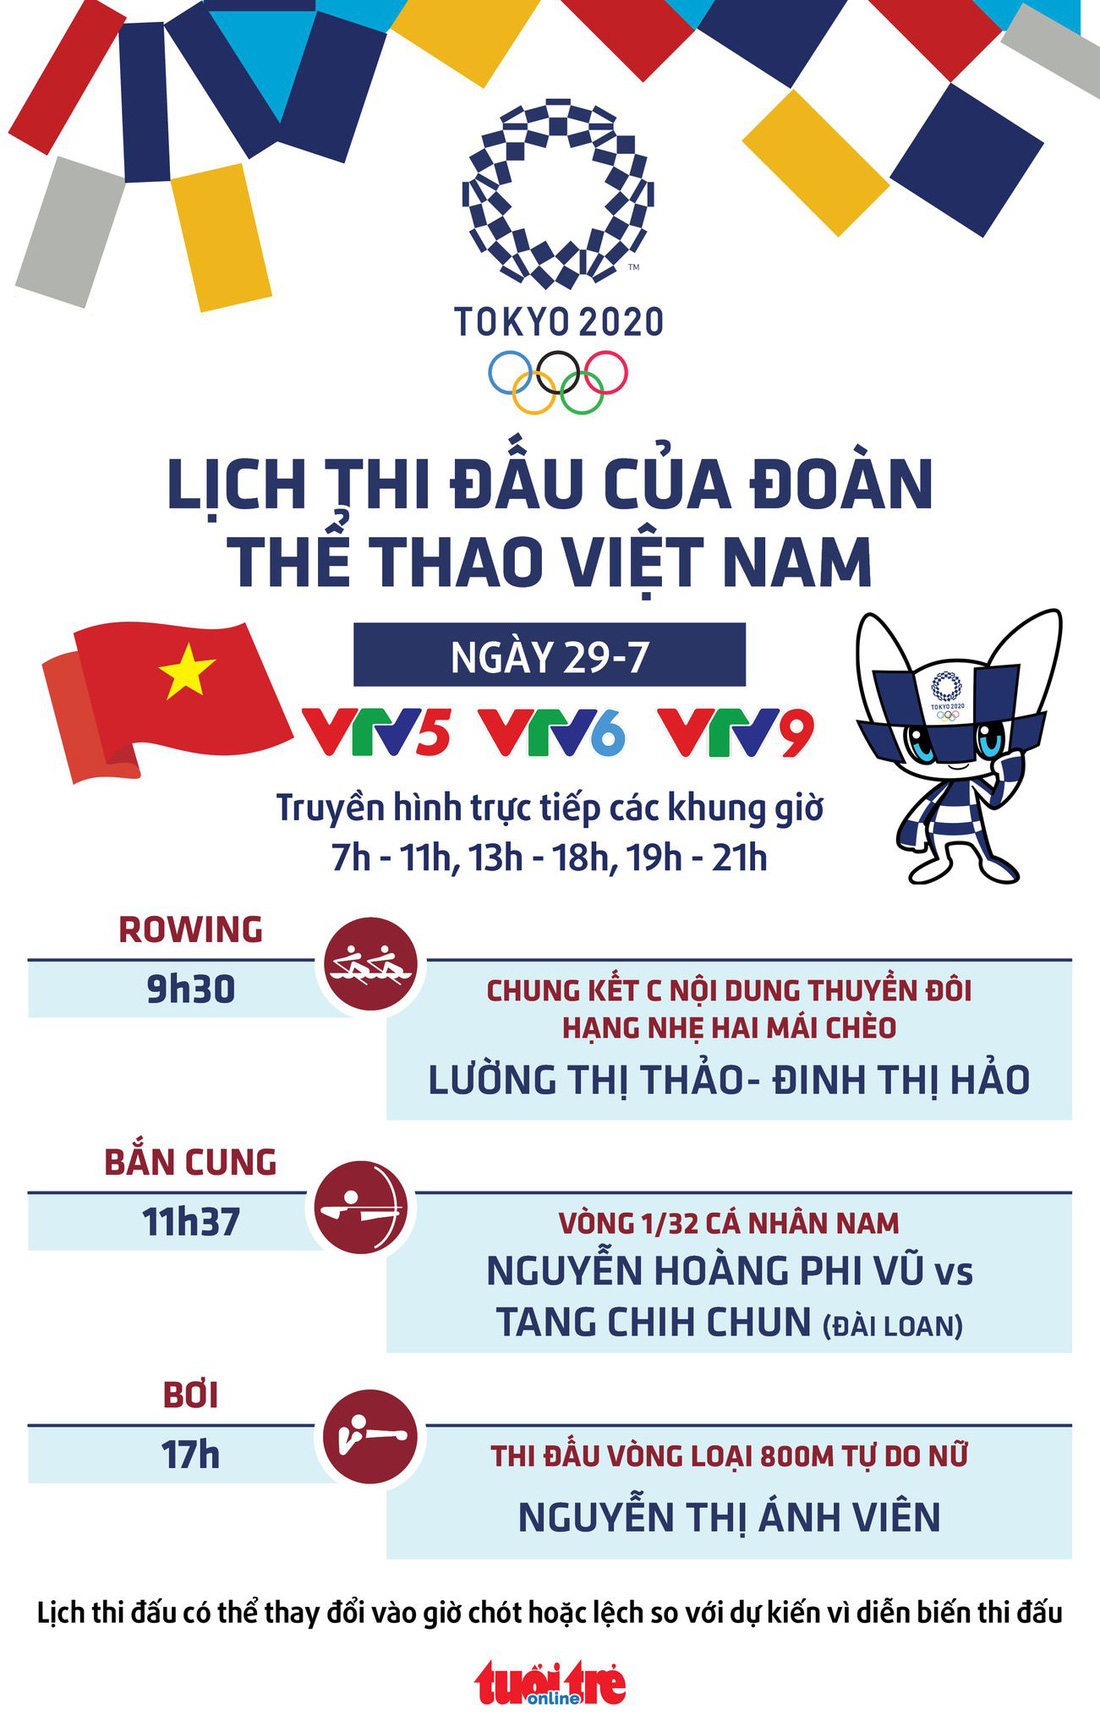 Lịch thi đấu ngày 29-7 của đoàn thể thao Việt Nam tại Olympic 2020: Ánh Viên đấu nội dung cuối - Ảnh 1.